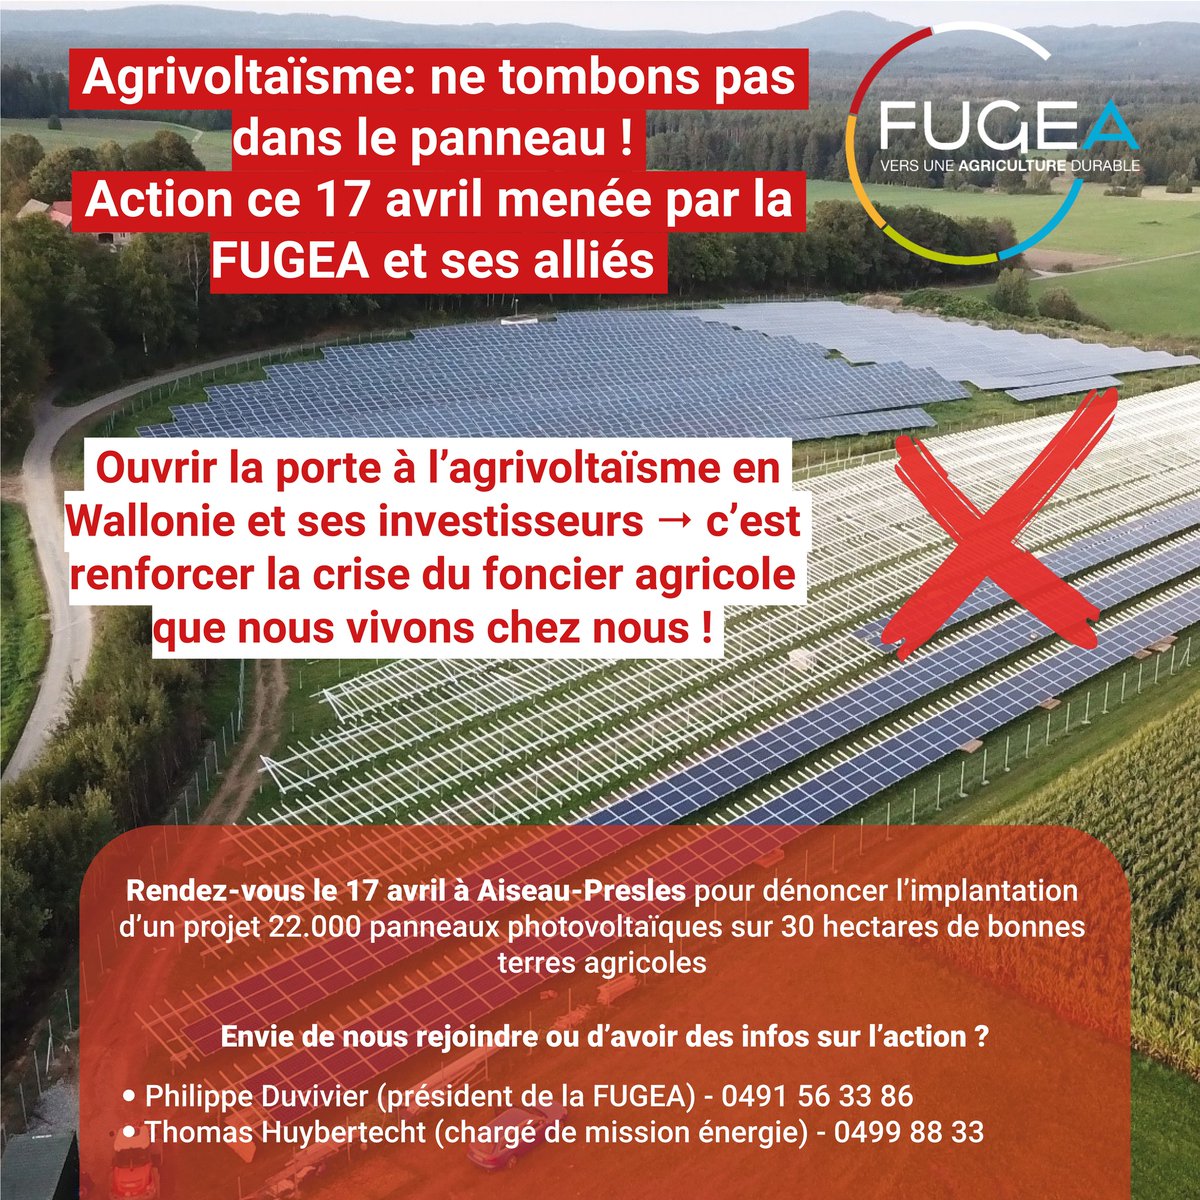 💥 Le #17avril on passe à l'action pour dénoncer l'agrivoltaïsme en Wallonie! 📌Rendez-vous à Aiseau-Prêle pour dénoncer l'implantation d'un projet de 22.000 panneaux photovoltaïques sur 30 ha de bonnes terres agricoles Info : luttespaysannes.be/spip.php?artic…